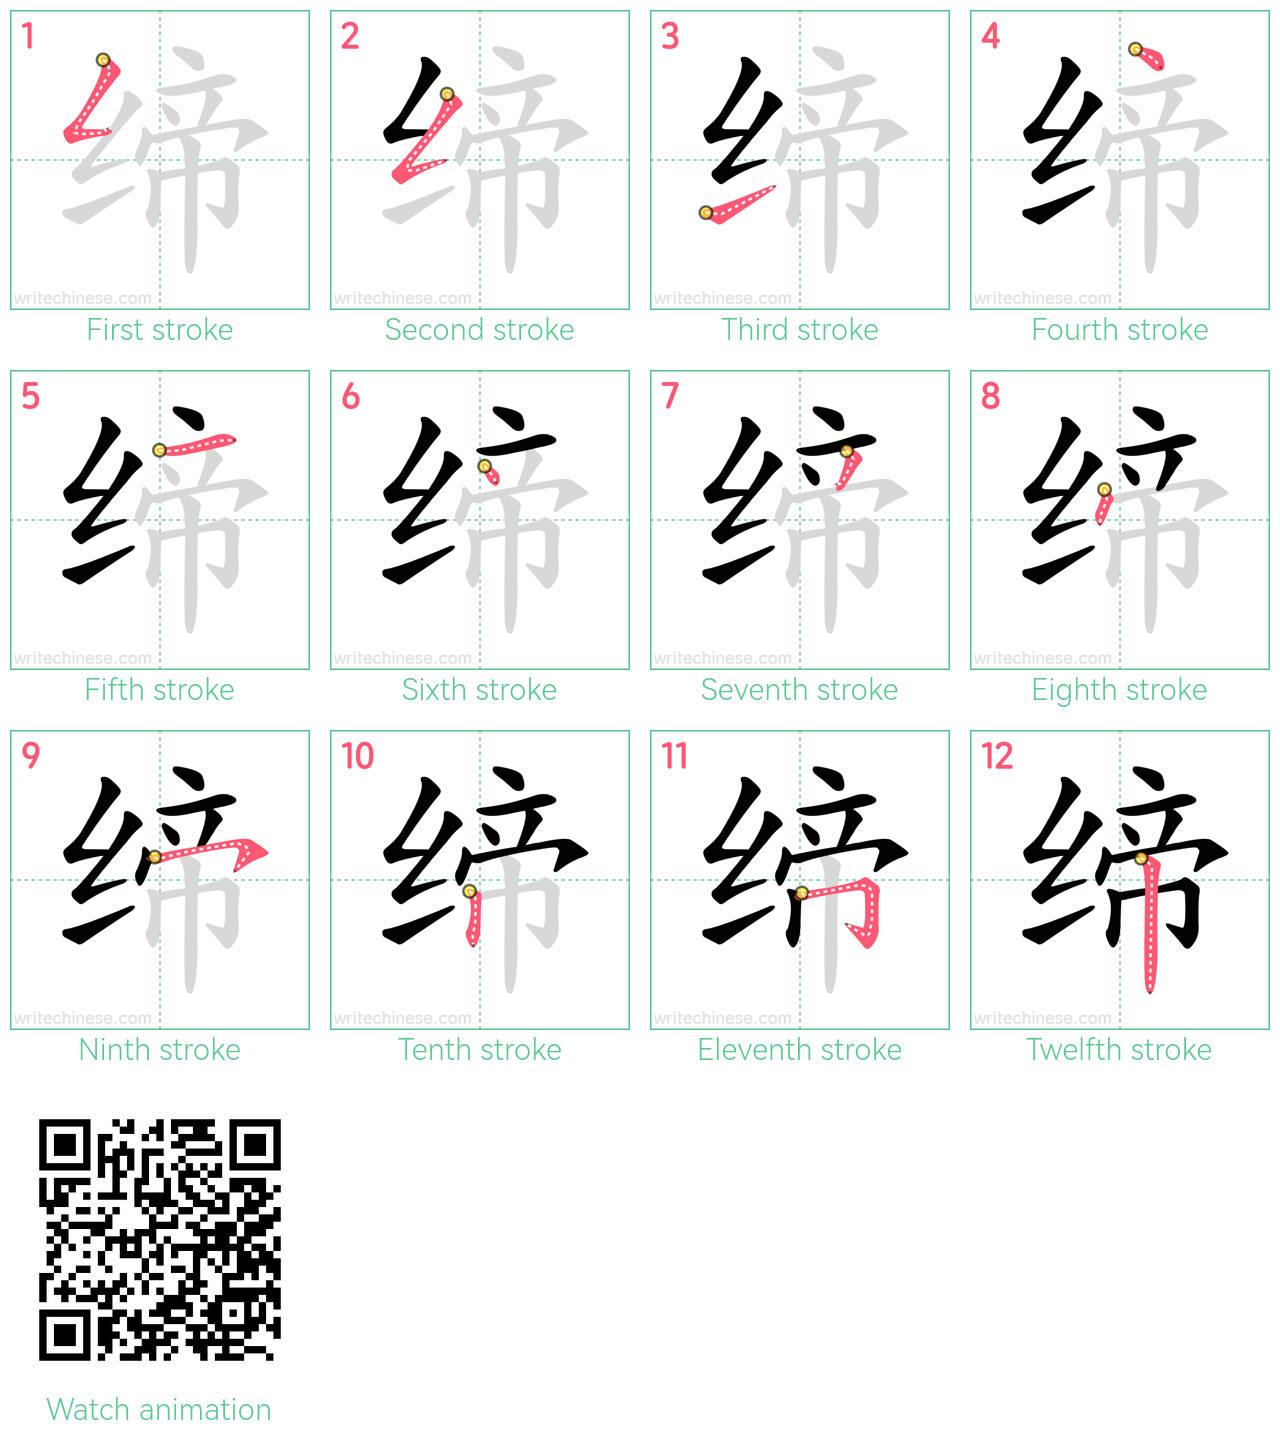 缔 step-by-step stroke order diagrams